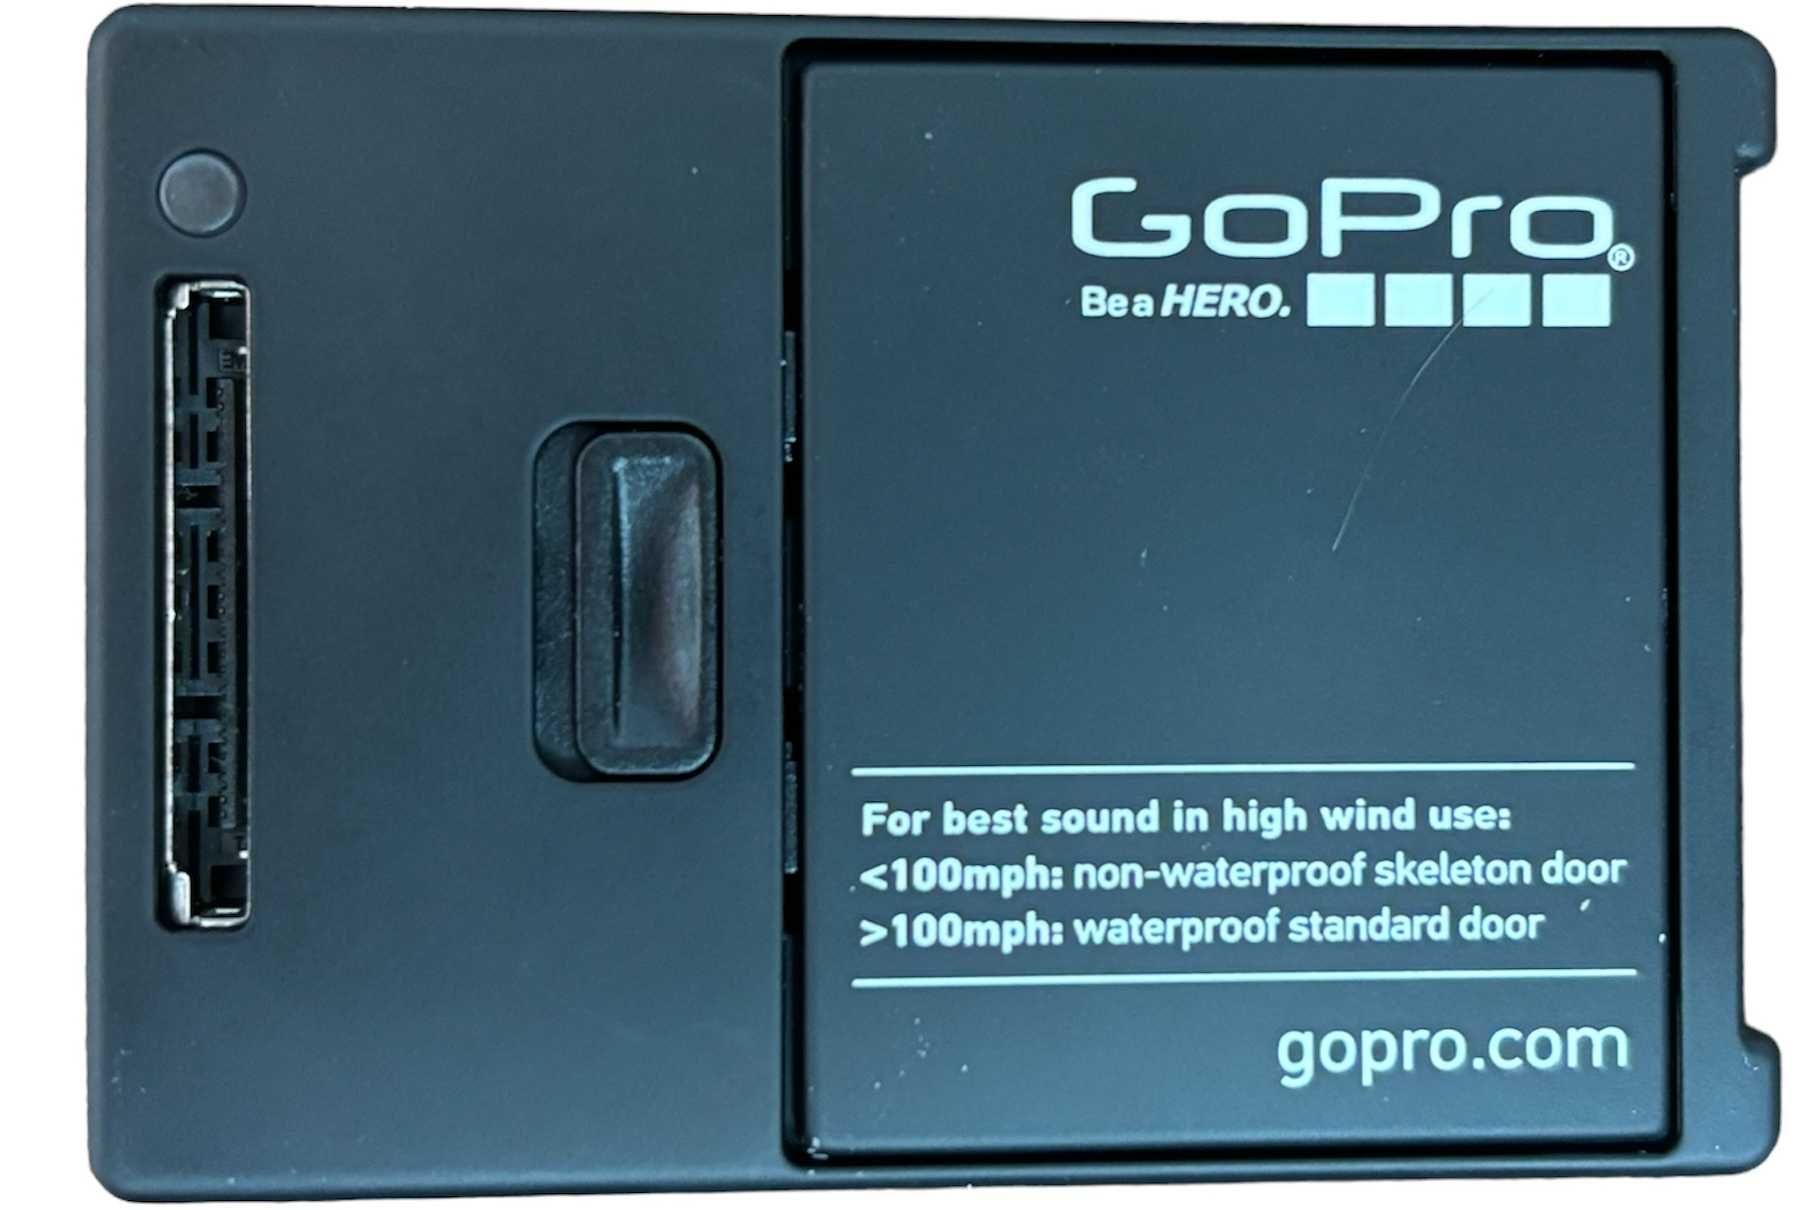 Kamera GOPRO HERO 3+ z boją wypornościową i etui wodoodpornym